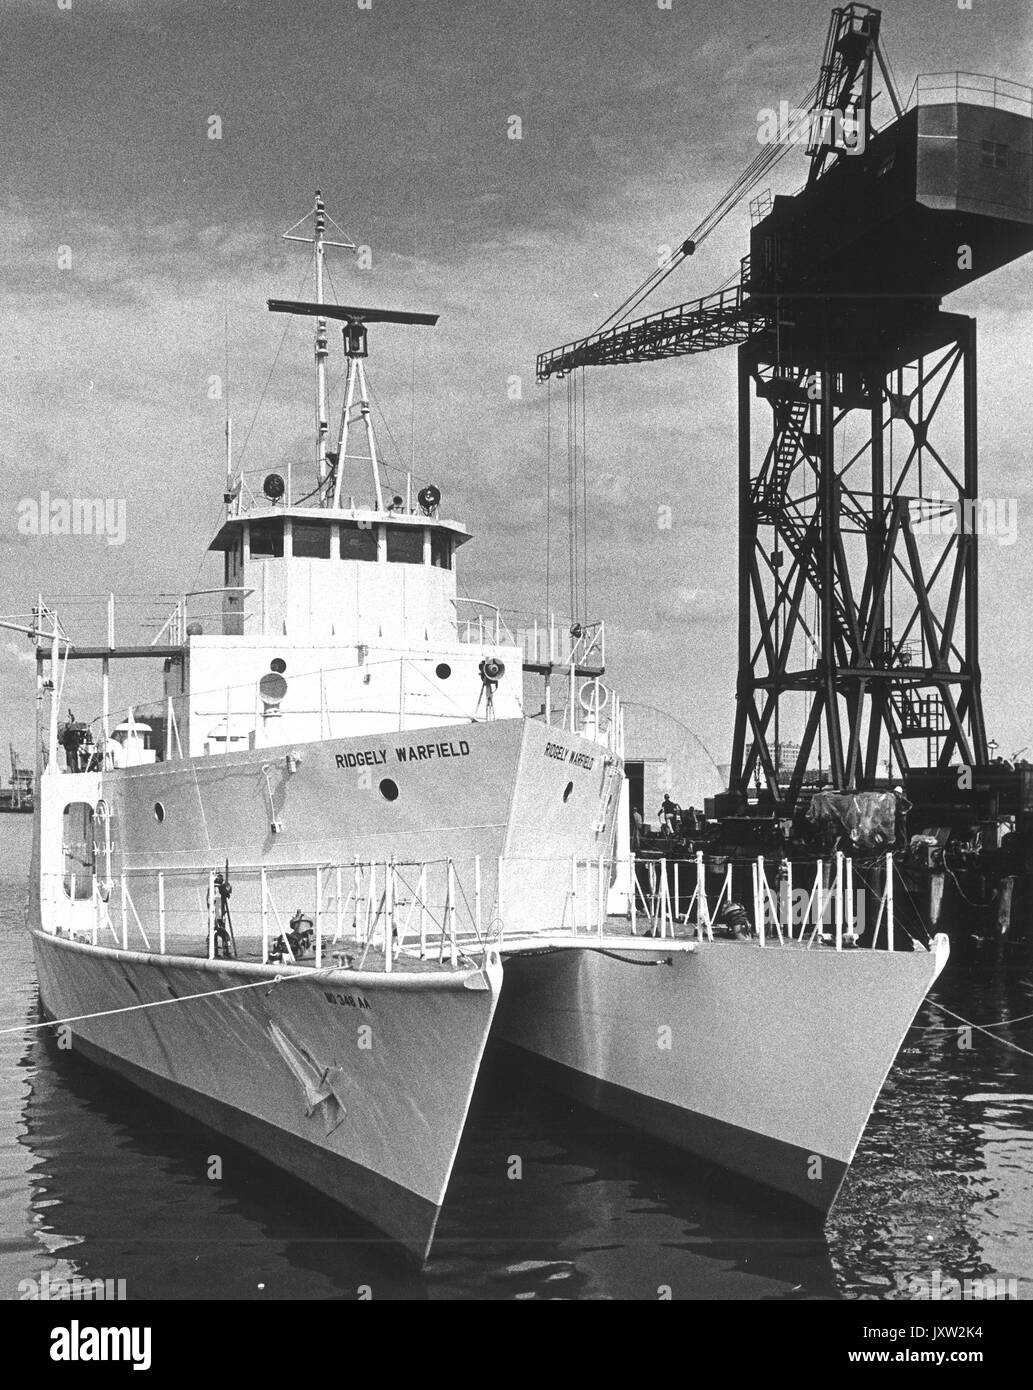 Institut de la baie de Chesapeake, ridgely warfield [recherche] navire amarré à côté de ridgely warfield grande grue, 1980. Banque D'Images